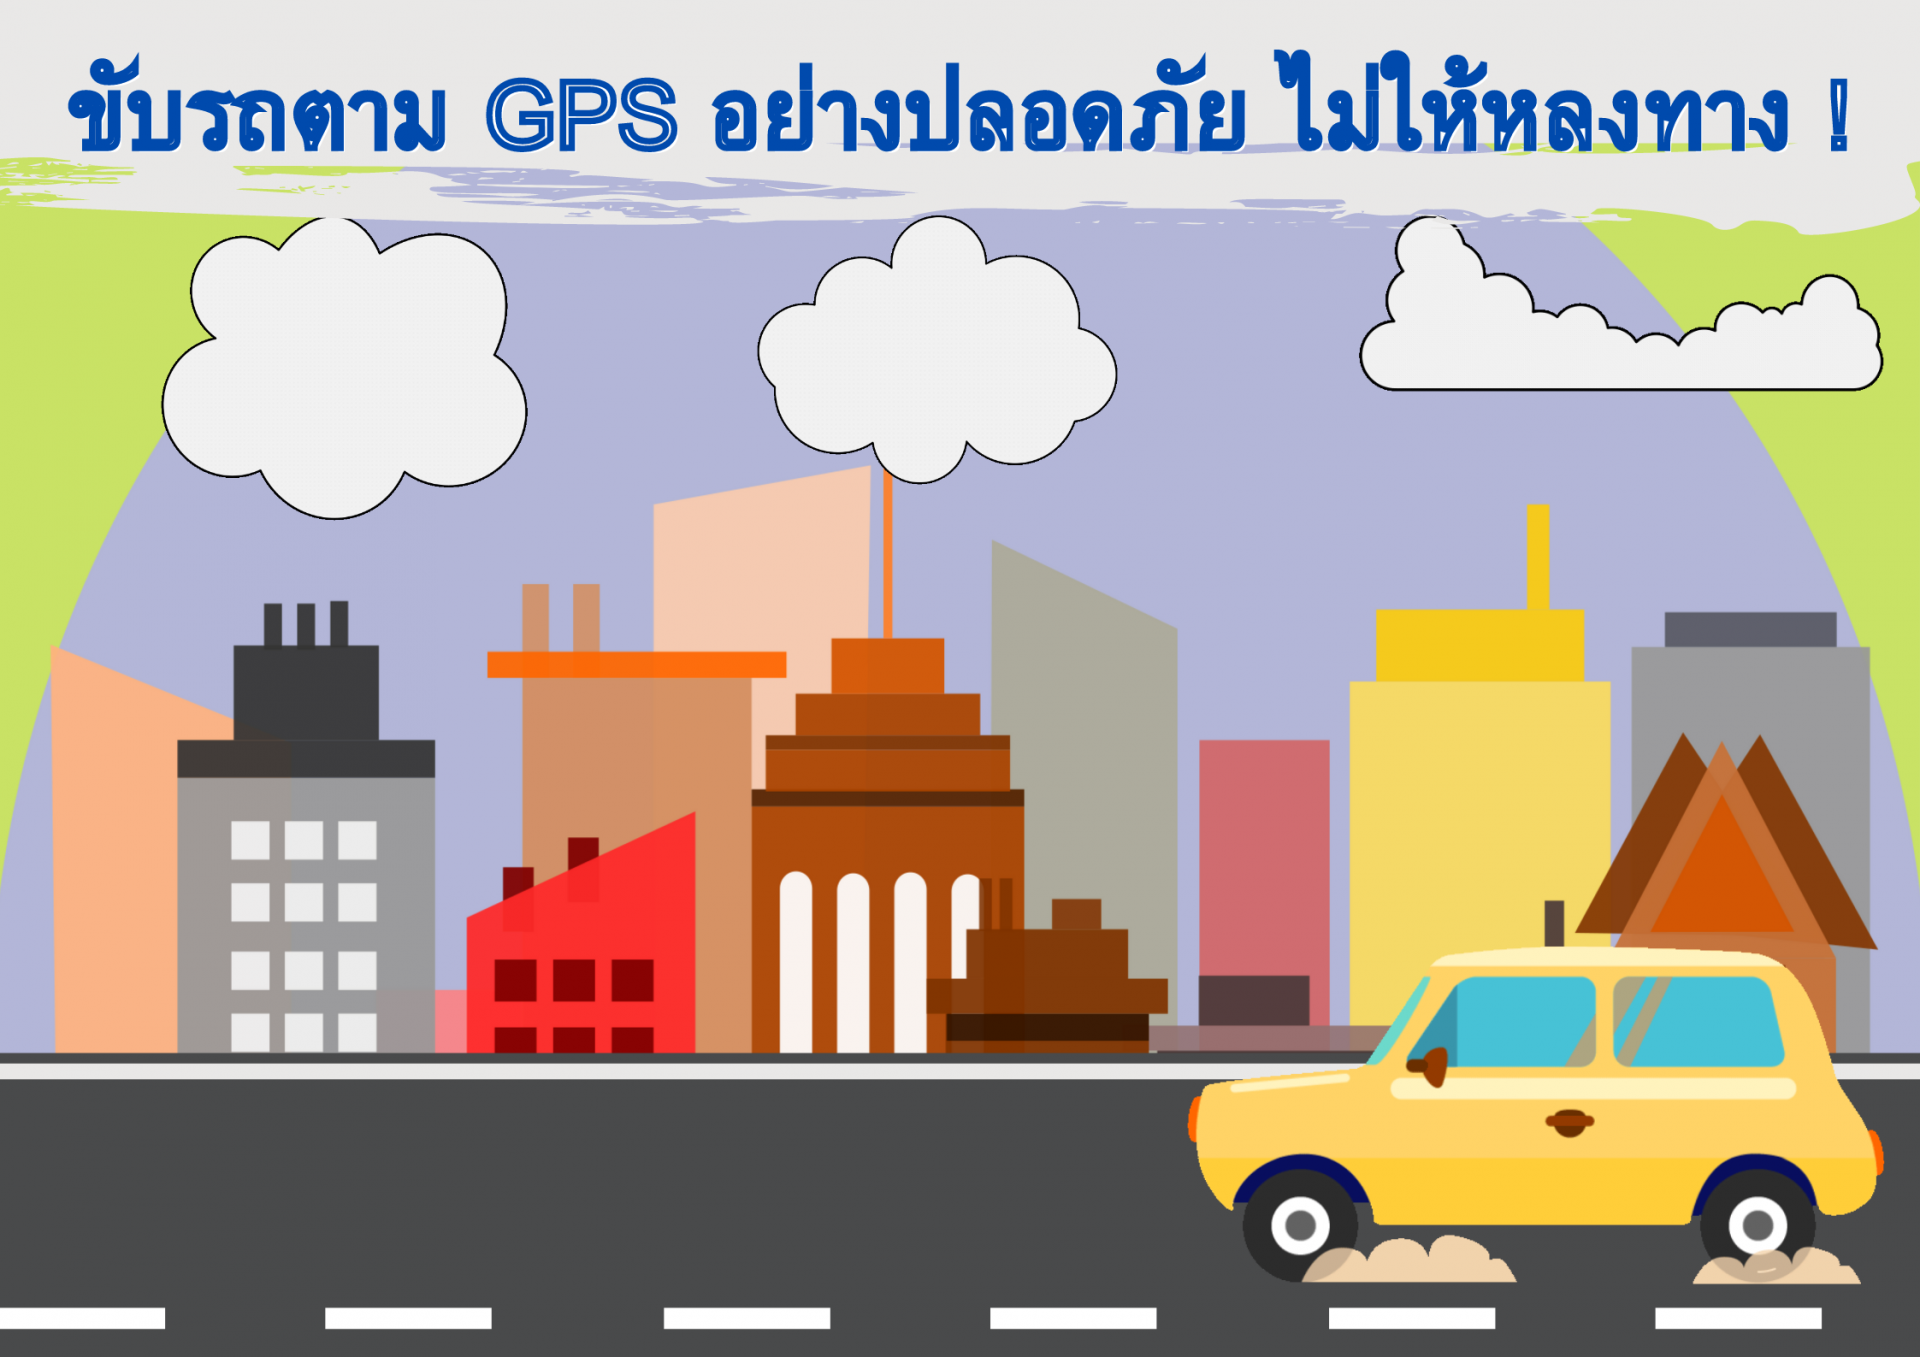 ขับรถตาม GPS อย่างปลอดภัย ไม่ให้หลงทาง !